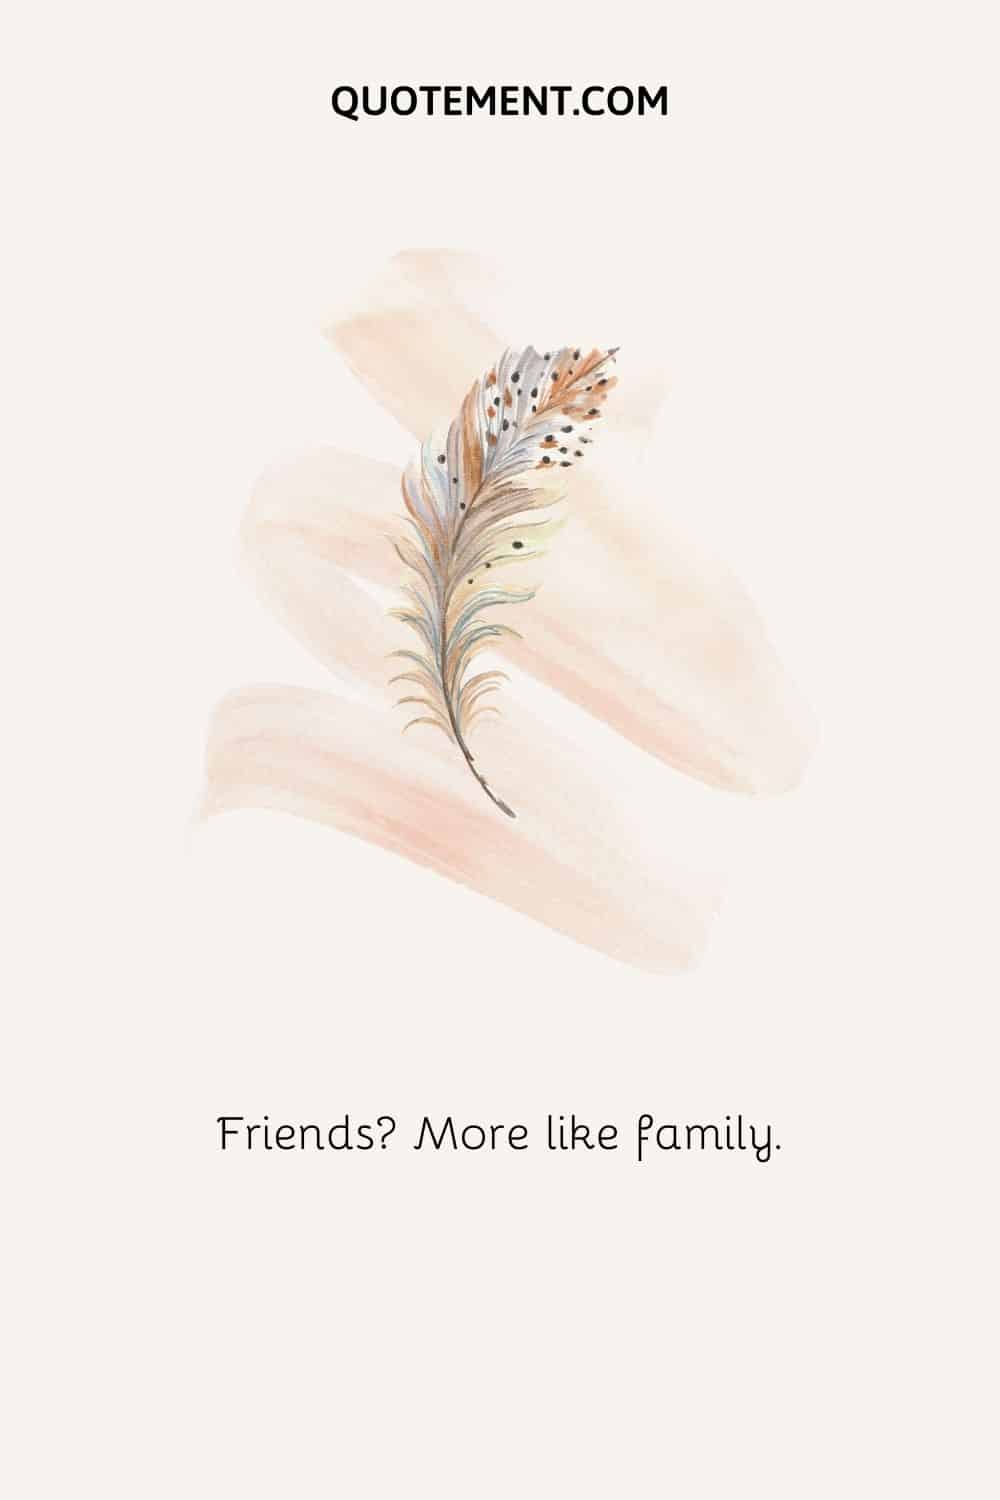 Amigos Más como familia.